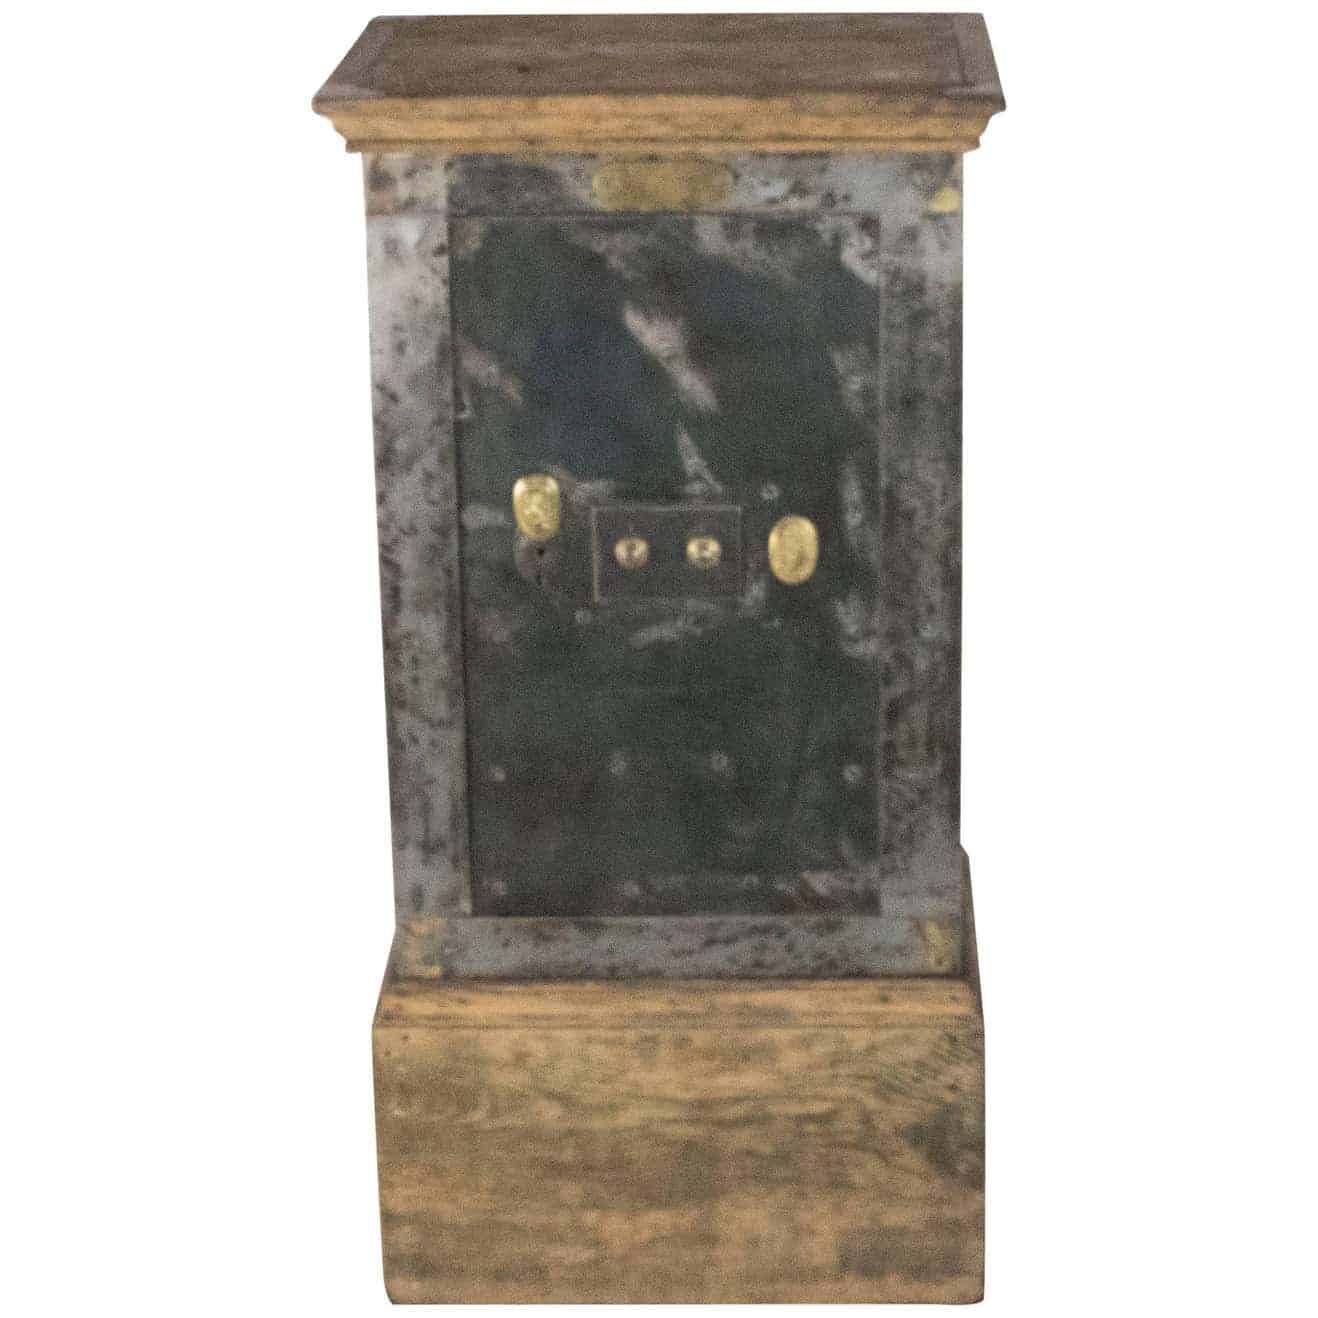 French H. Dorval steel safe